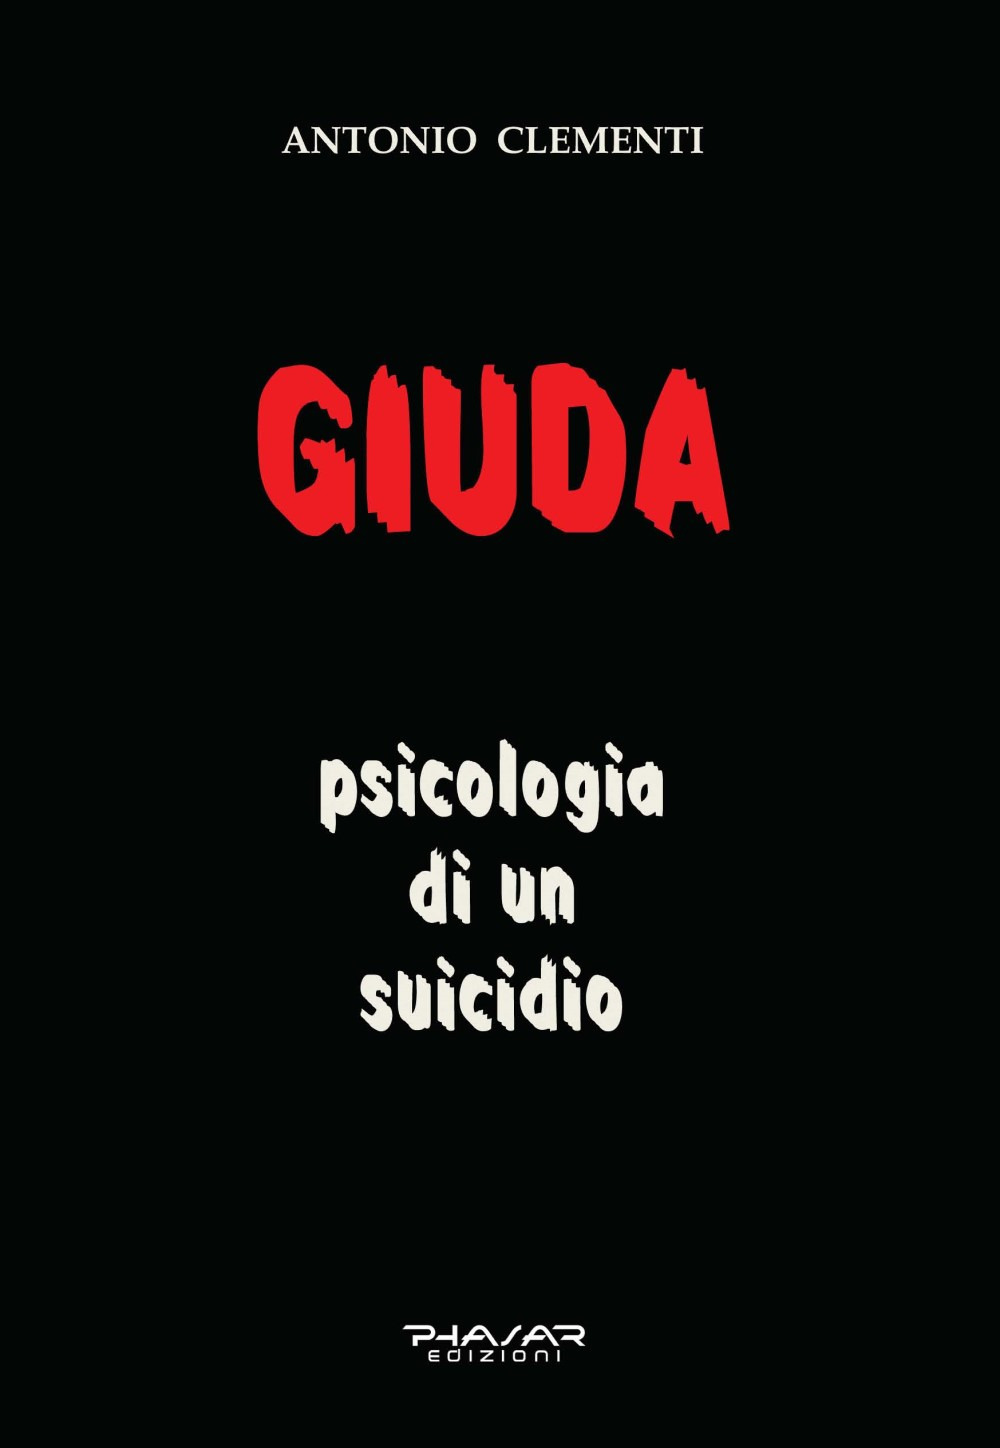 Giuda, psicologia di un suicidio